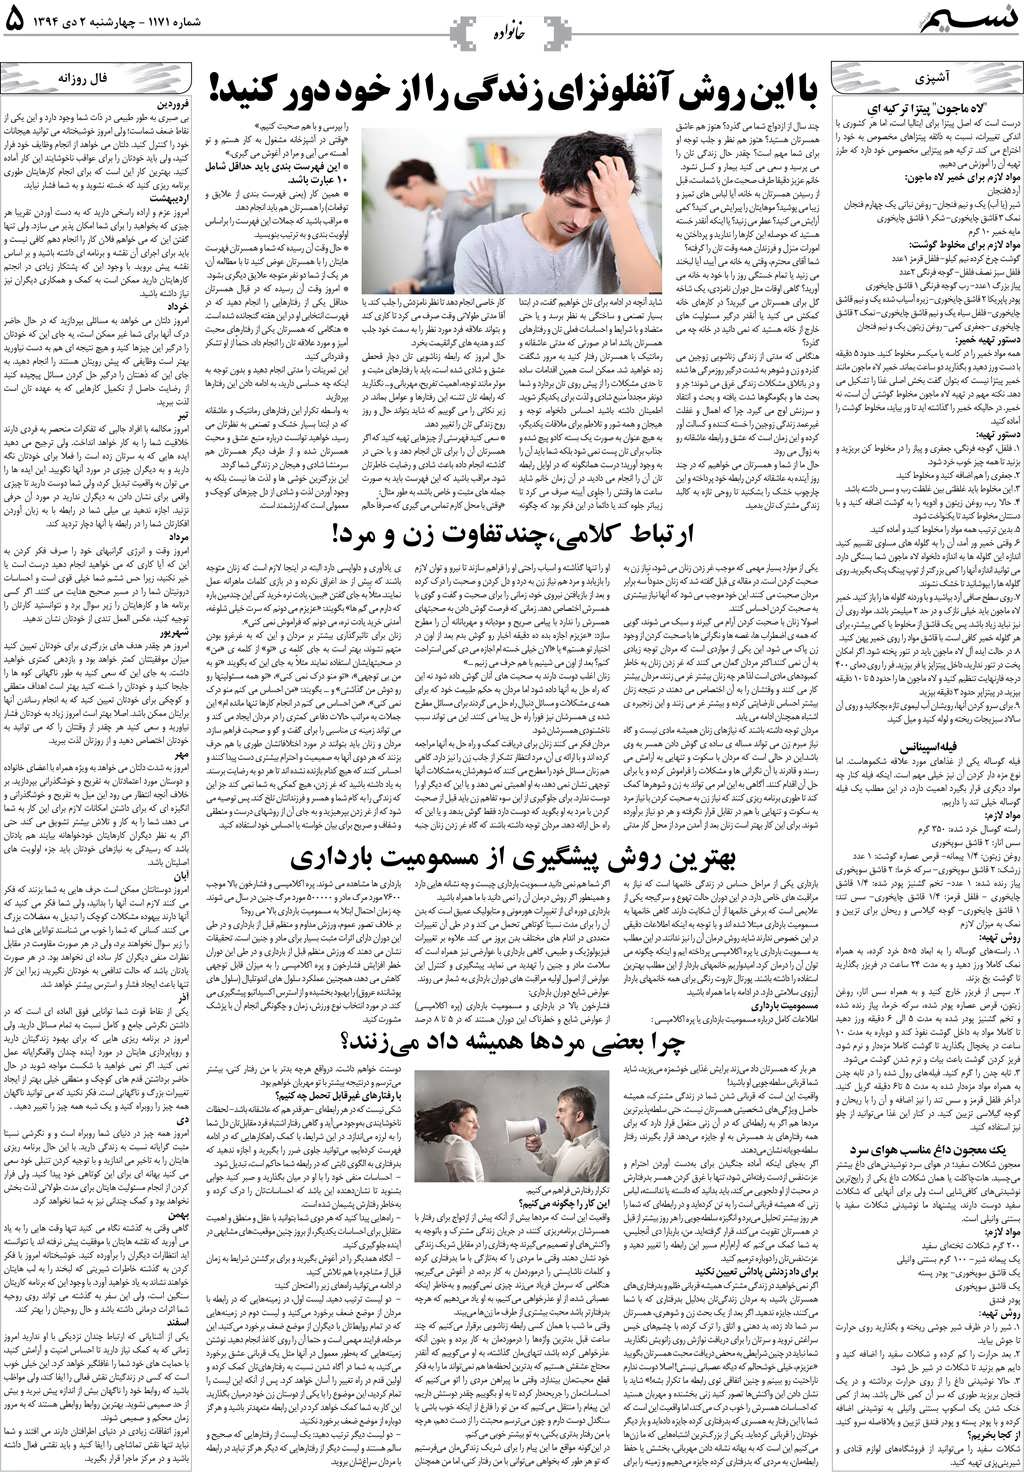 صفحه خانواده روزنامه نسیم شماره 1171